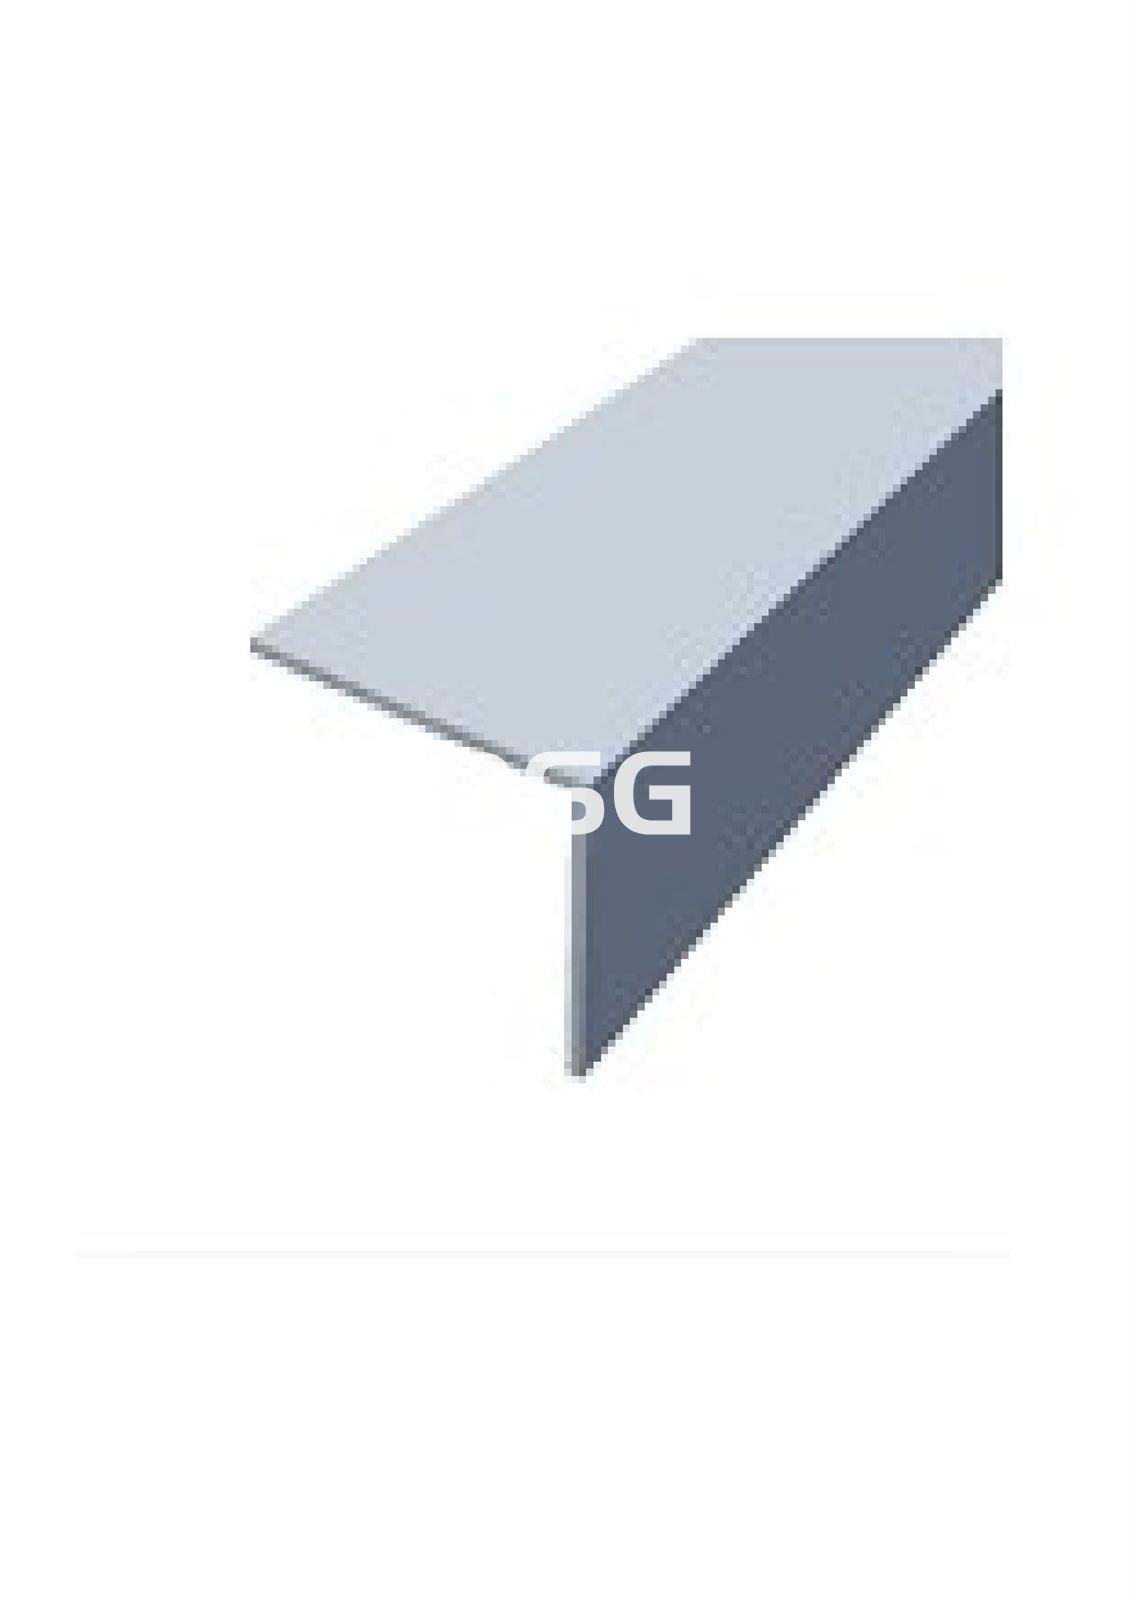 vesícula biliar Punto de referencia Nuestra compañía Ángulo Aluminio Cromado 30x30x2000 | DSG Disergal